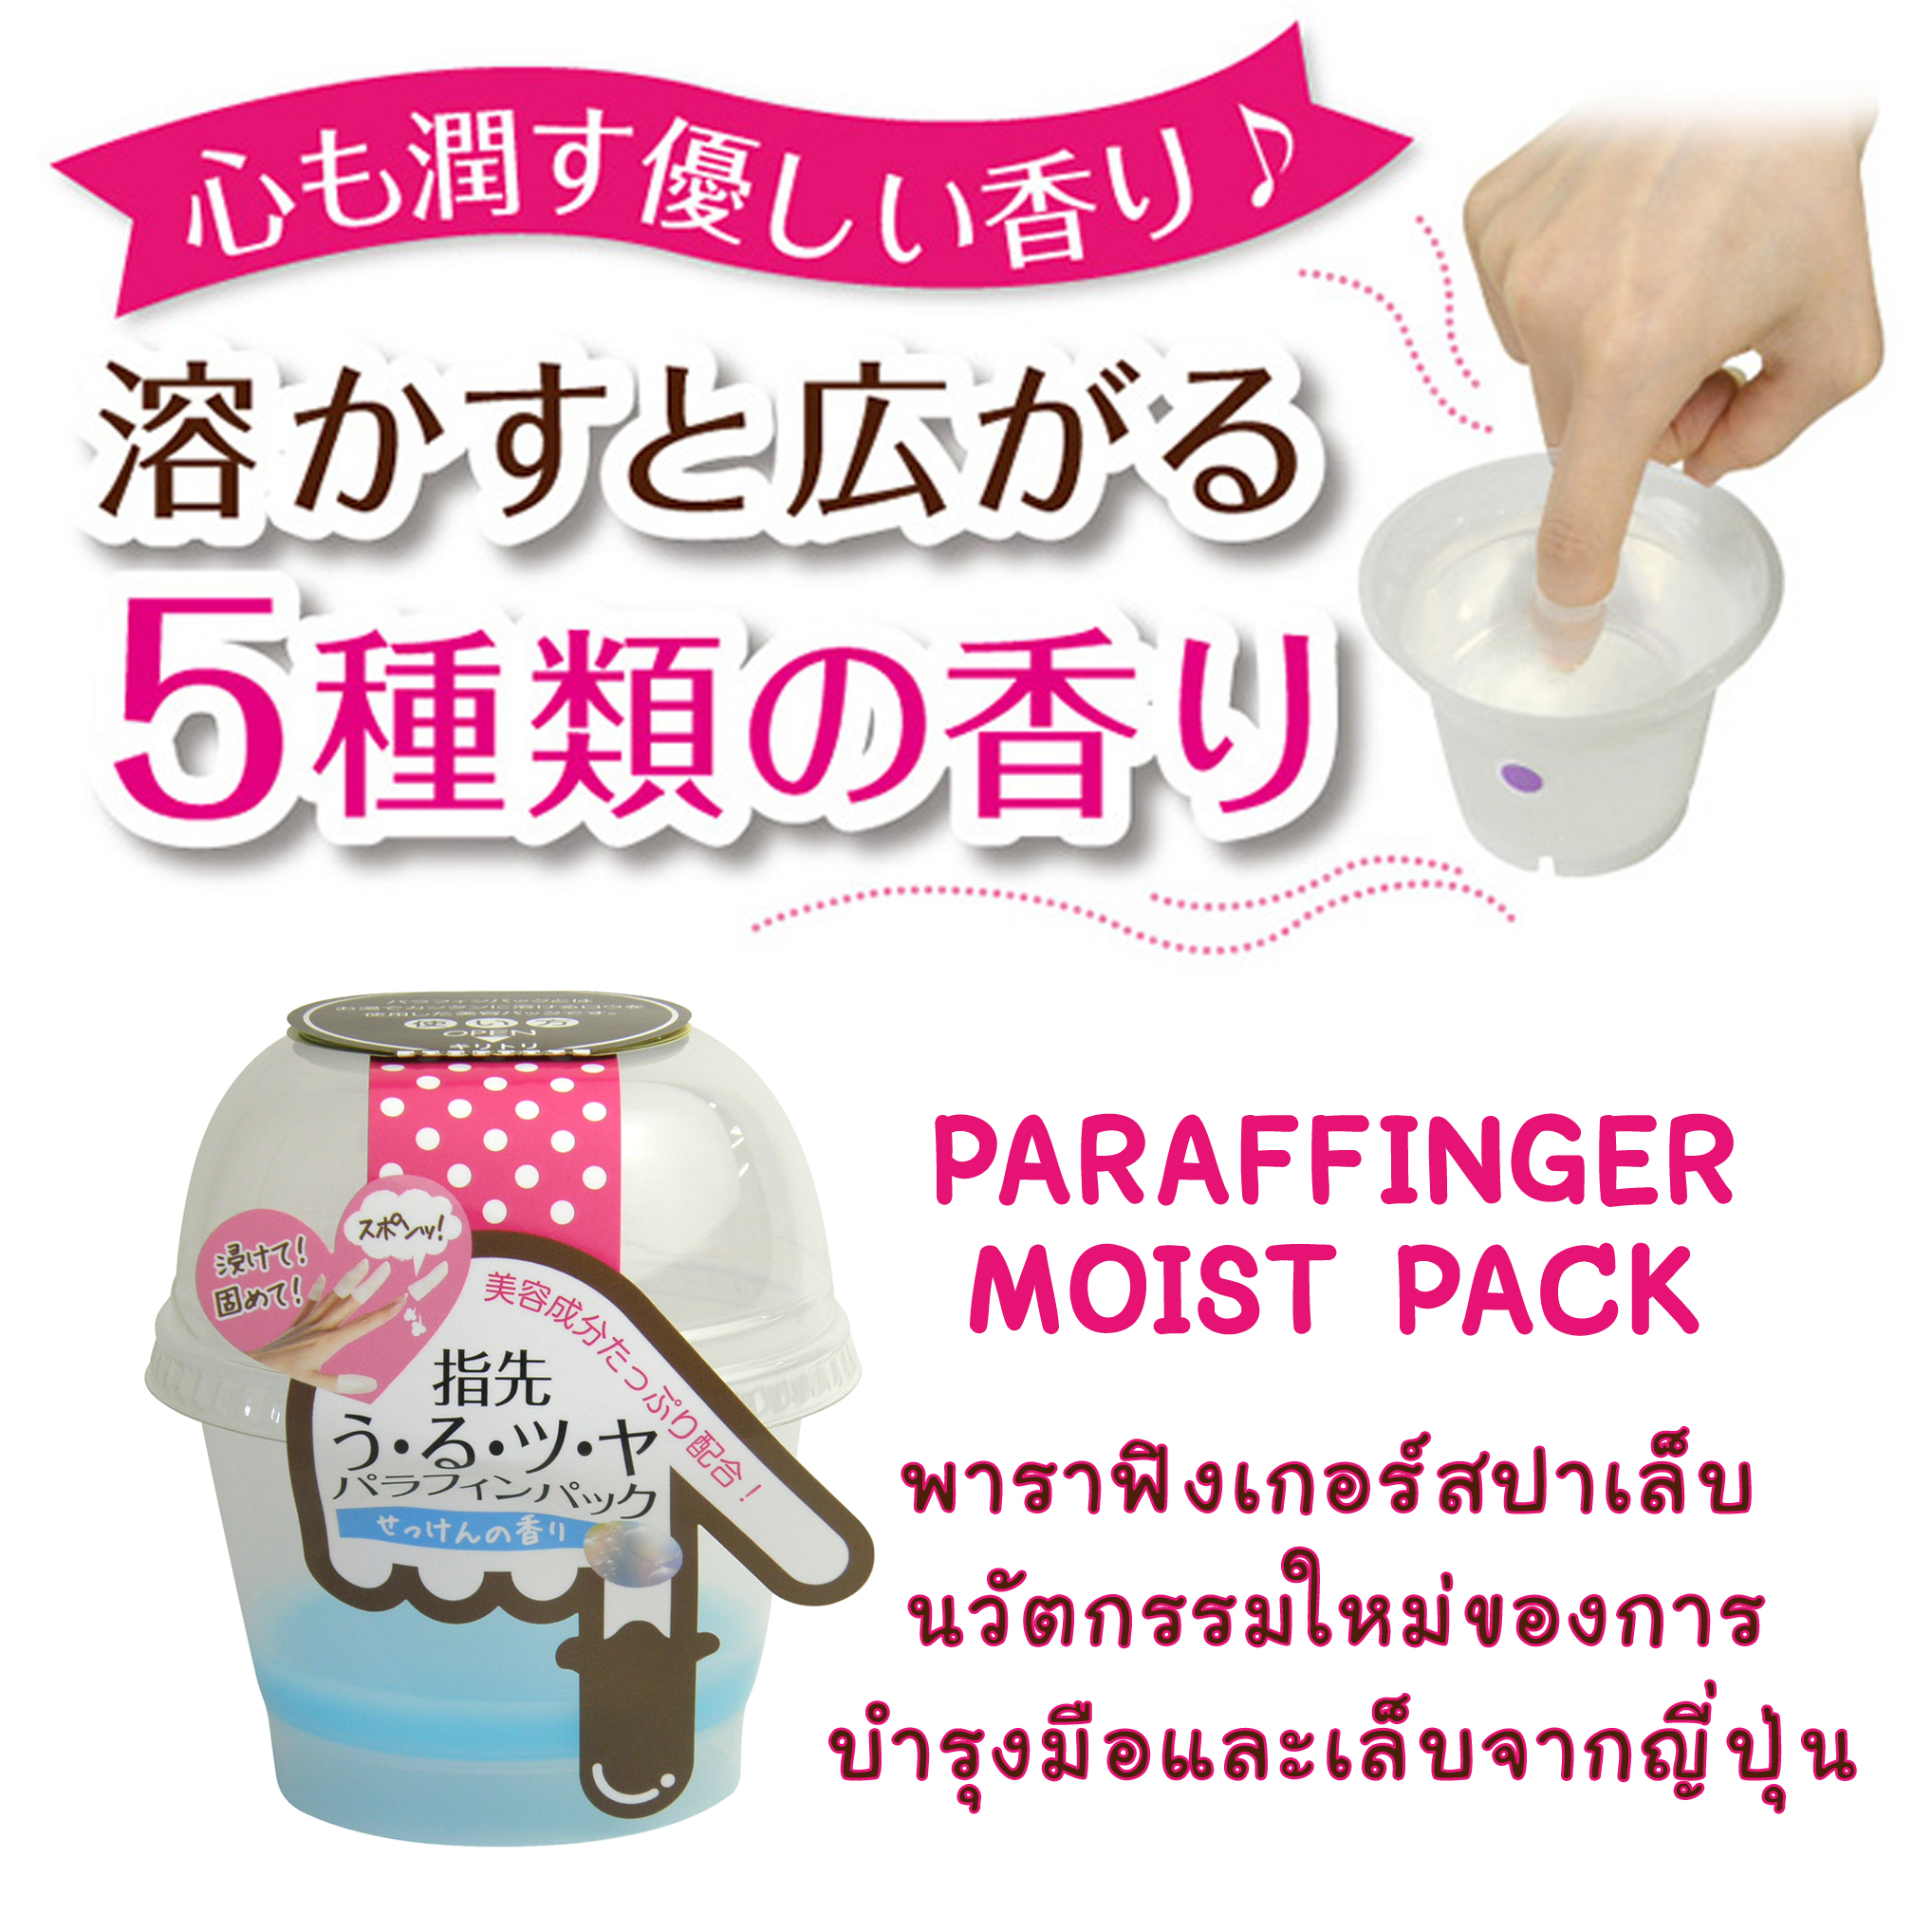 PARAFFINGER MOIST PACK (พาราฟิงเกอร์) สปาเล็บ บำรุงมือและเล็บ นวัตกรรมใหม่จากญี่ปุ่น รูปที่ 1